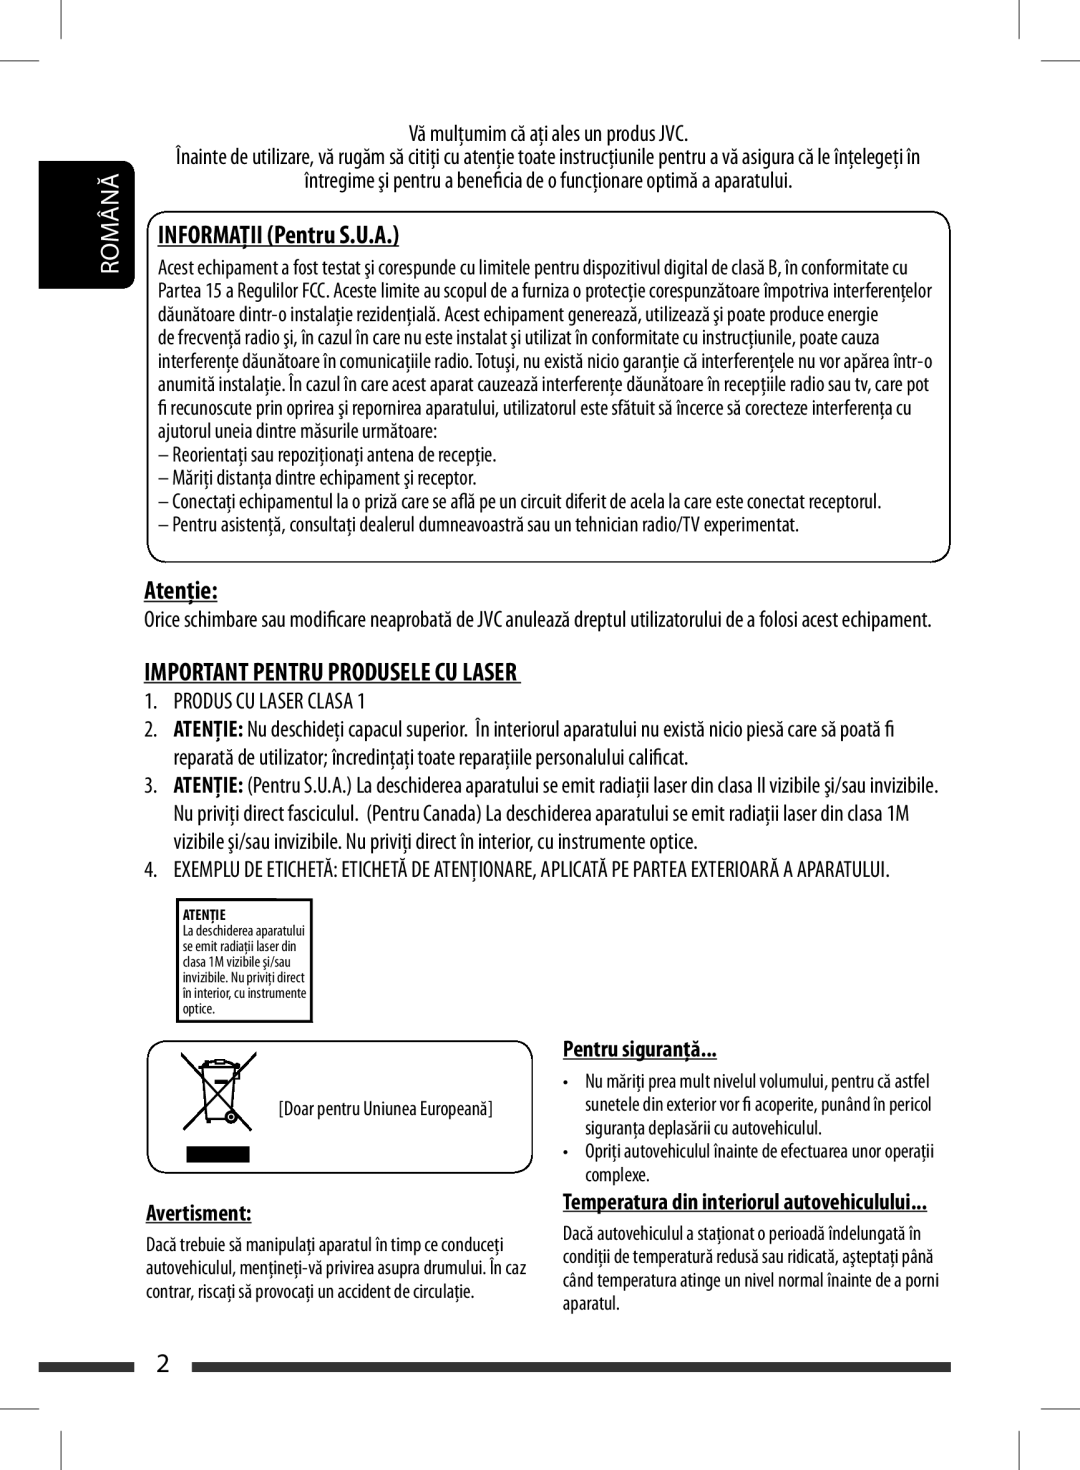 JVC KD-BT11 manual Română, INFORMAŢIIT ONPentruFor U.S.AU.A, Atenţie Caution, Important Pentru Produsele Cu Laser 